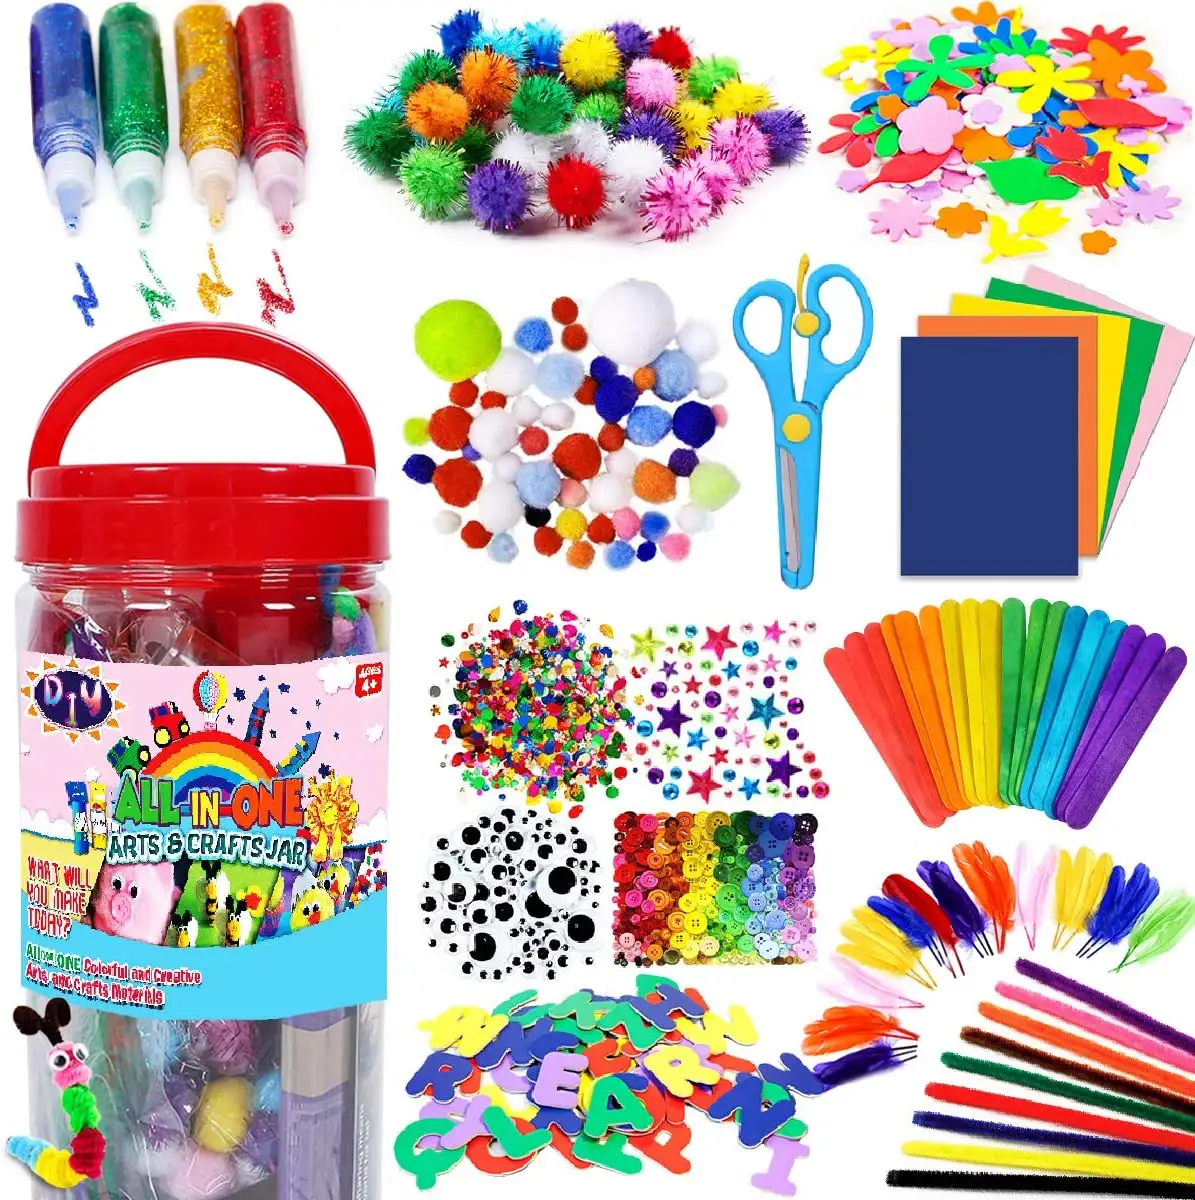 Educatieve Dubbele Geschenkdoos Hand Crafting Kit Kunst Ambachten Benodigdheden Voor Kinderen Kleurrijke Producten In Deze Geschenkdoos Met Trommel